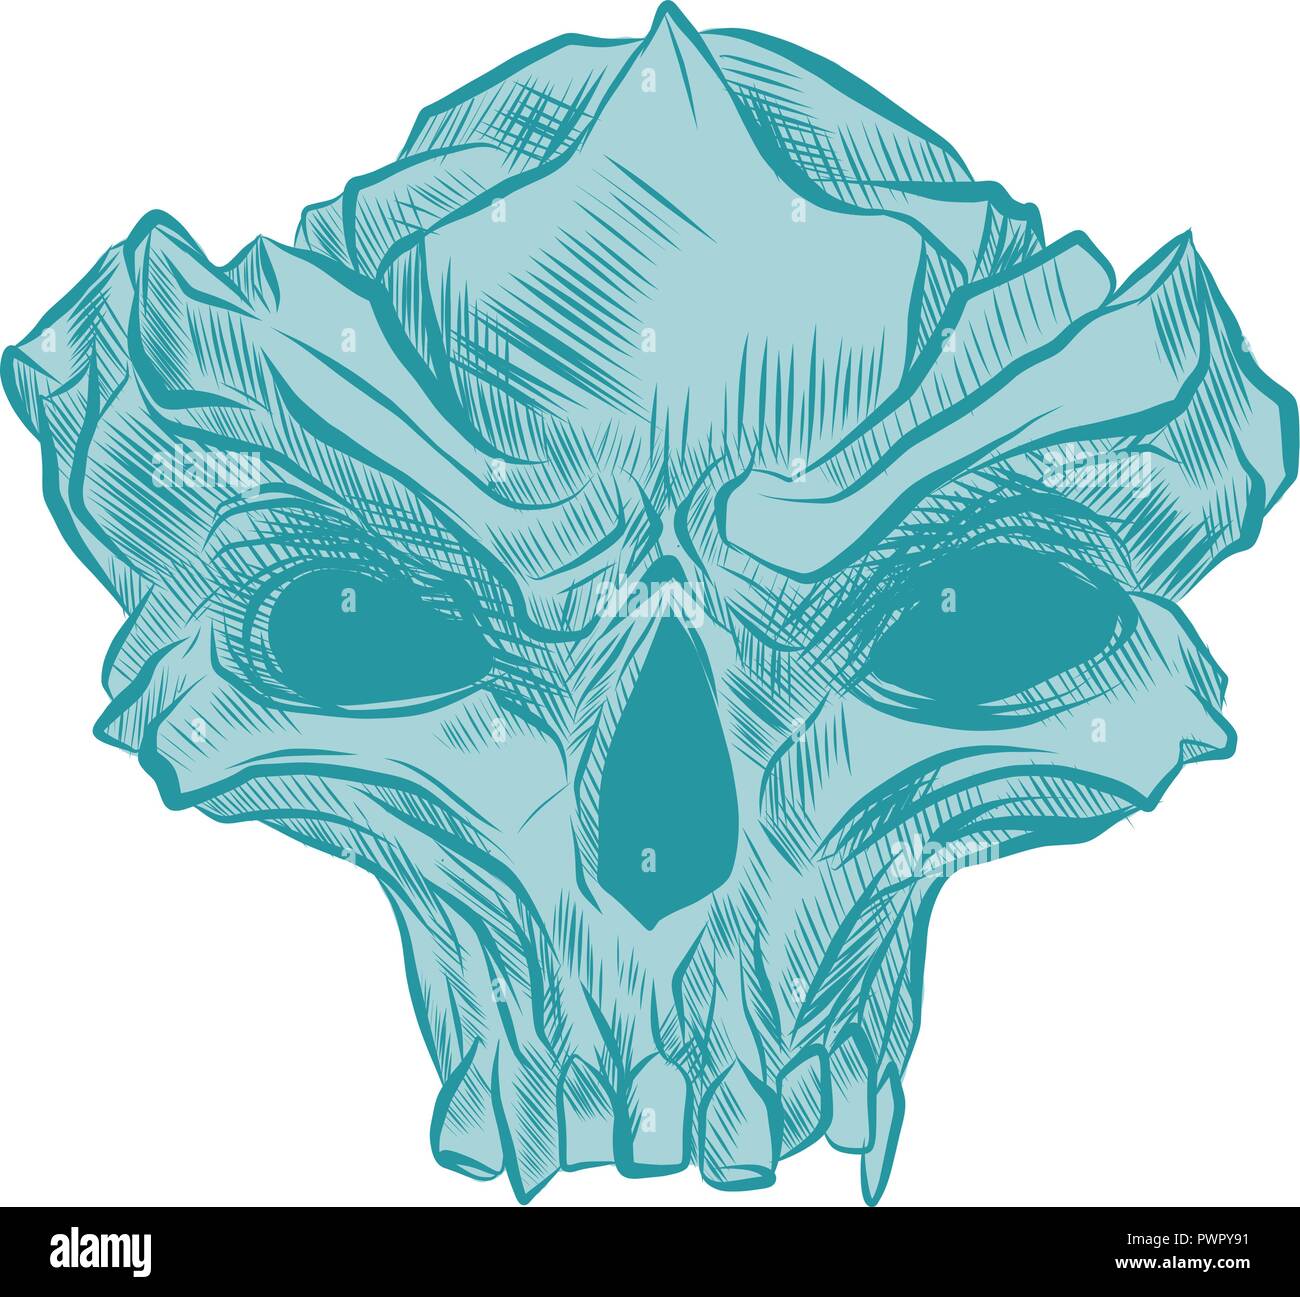 Skull Vector illustration, Collection Of Hand Drawn Skulls, Hard Core Skull Vector Art Stock Vector